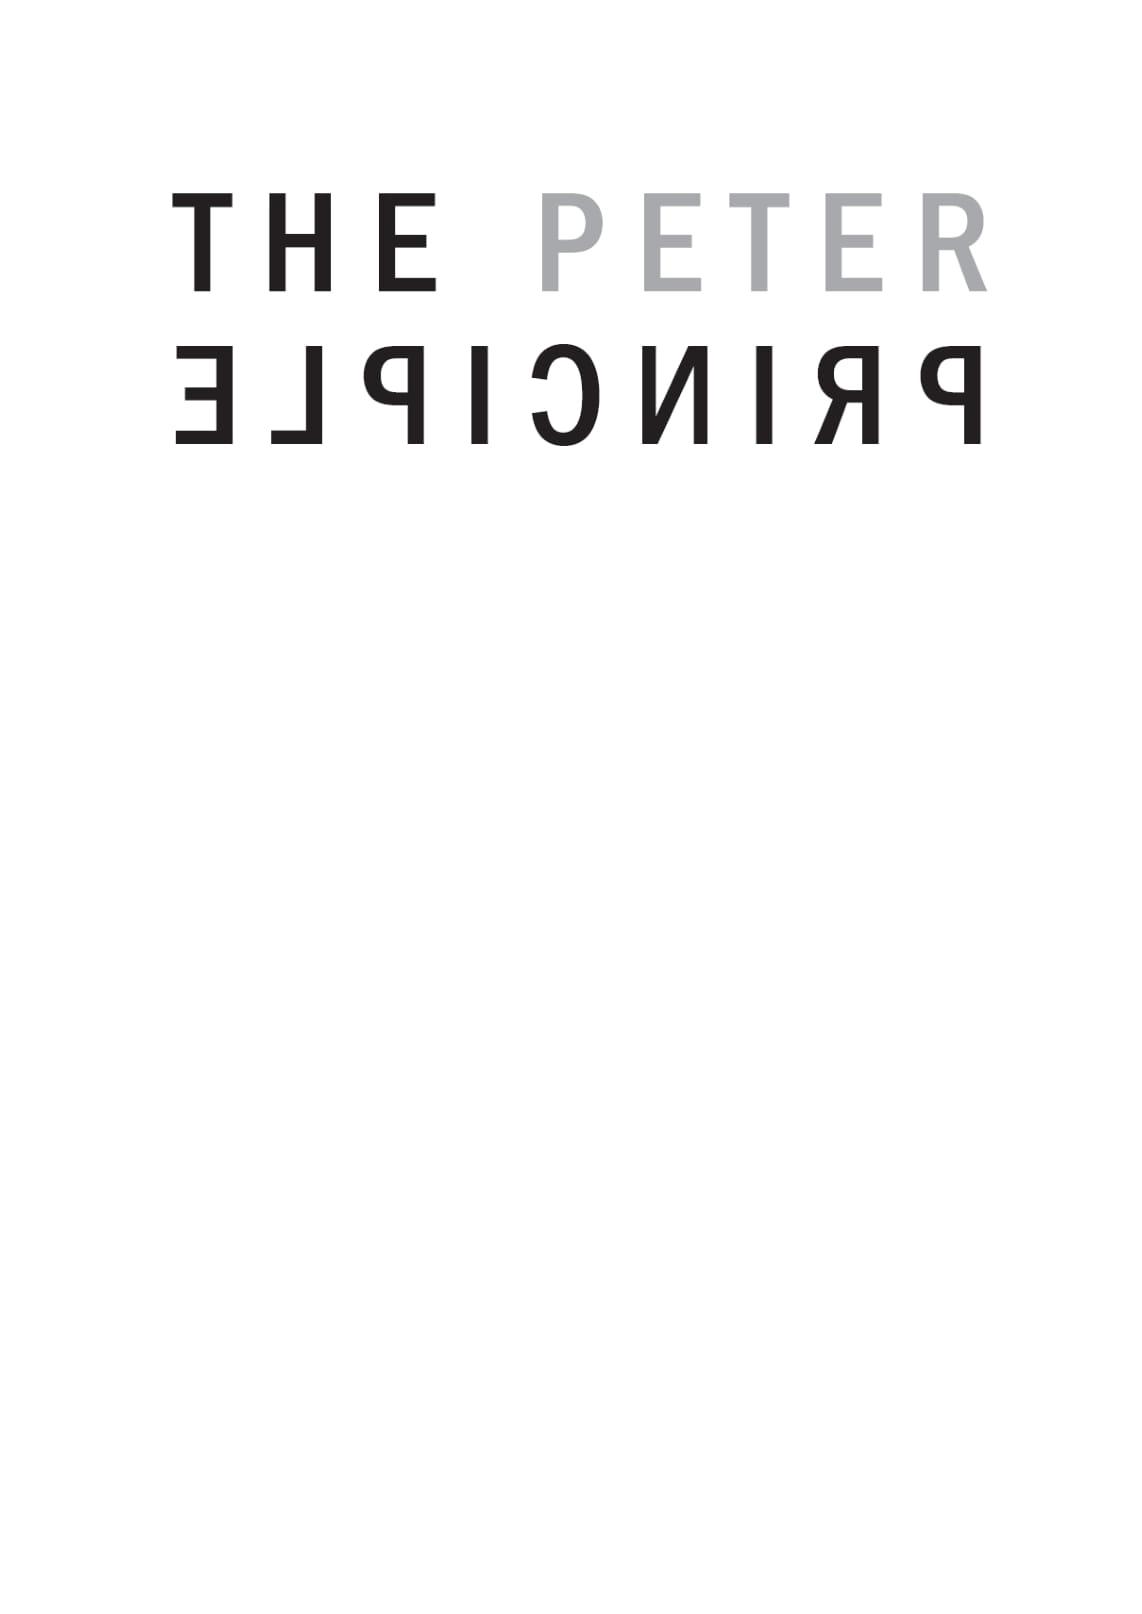 Nguyên Lý Peter - Tại Sao Mọi Thứ Cứ Sai Sai? (Tái Bản 2020)